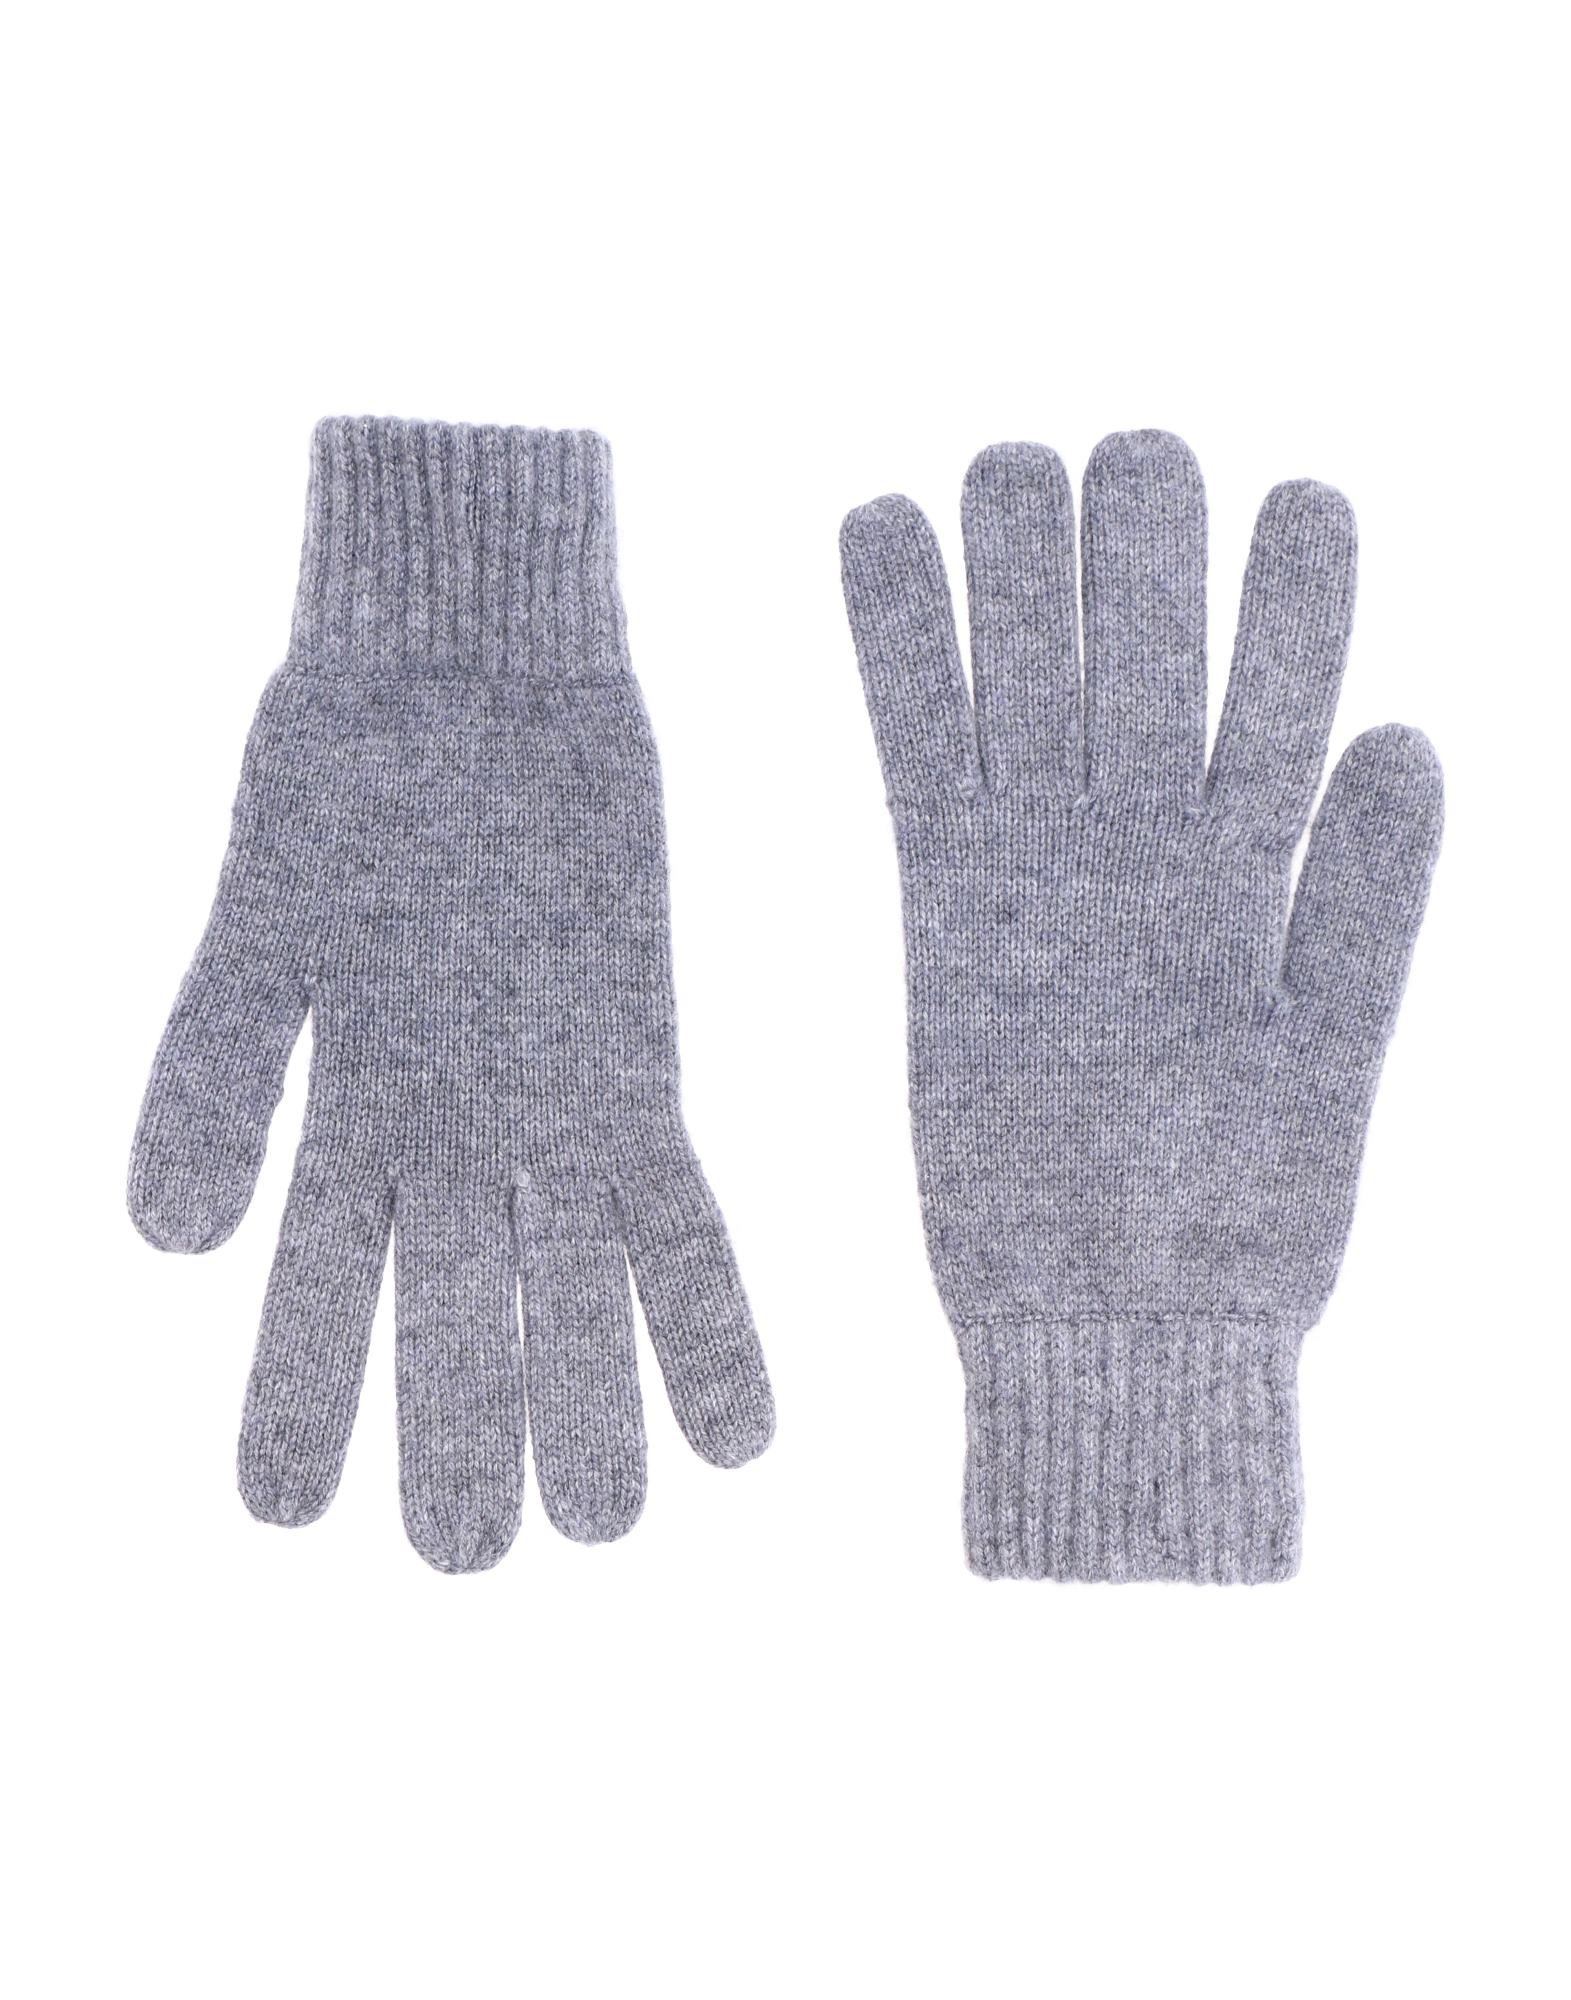 Simon Gray. Gloves In Grey